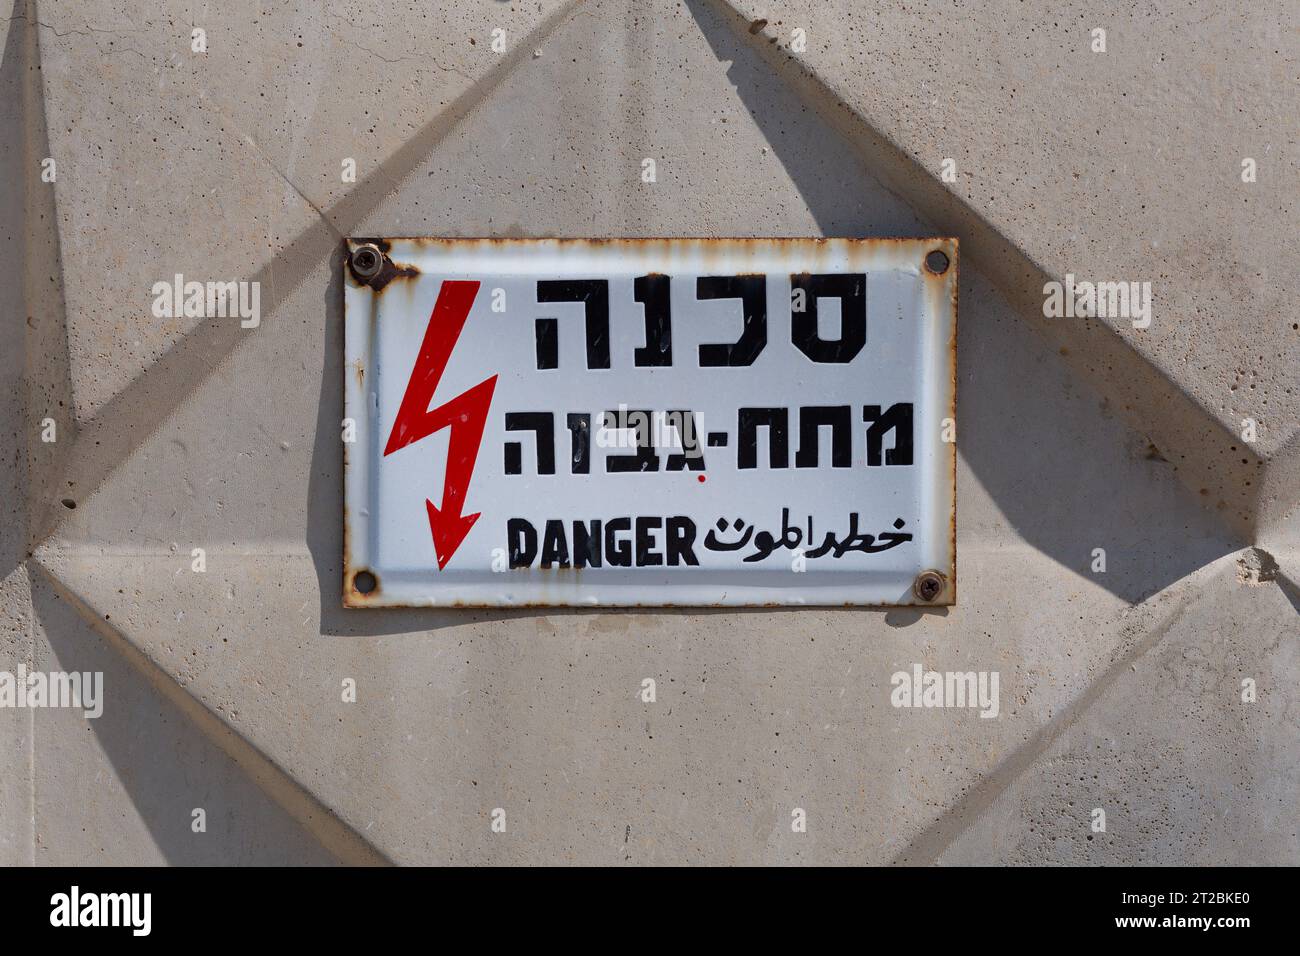 Elektrizitätsgefahr-Schild in Hebräisch, Arabisch und Englisch, an eine Betonwand genagelt Stockfoto